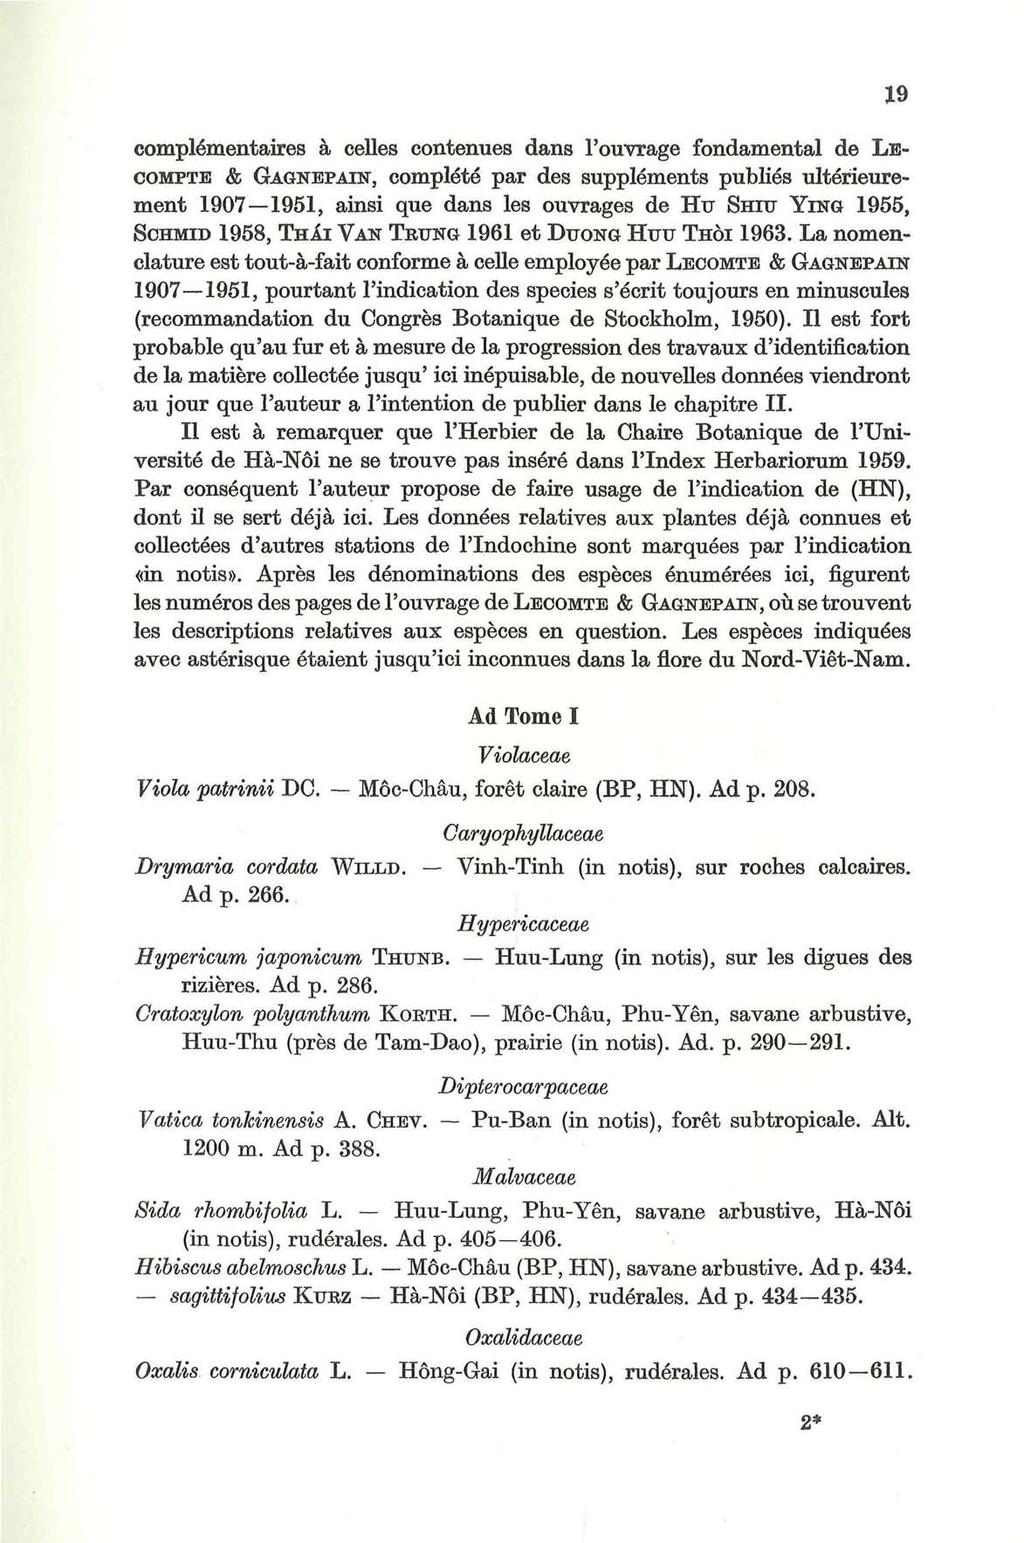 complementaires ä celles contenues dans l'ouvrage fundamental de LE- COMPTE & GAGNEPAIN, complete par des supplements publies ulterieurement 1907 1951, ainsi que dans les ouvrages de Hu SHITJ YING